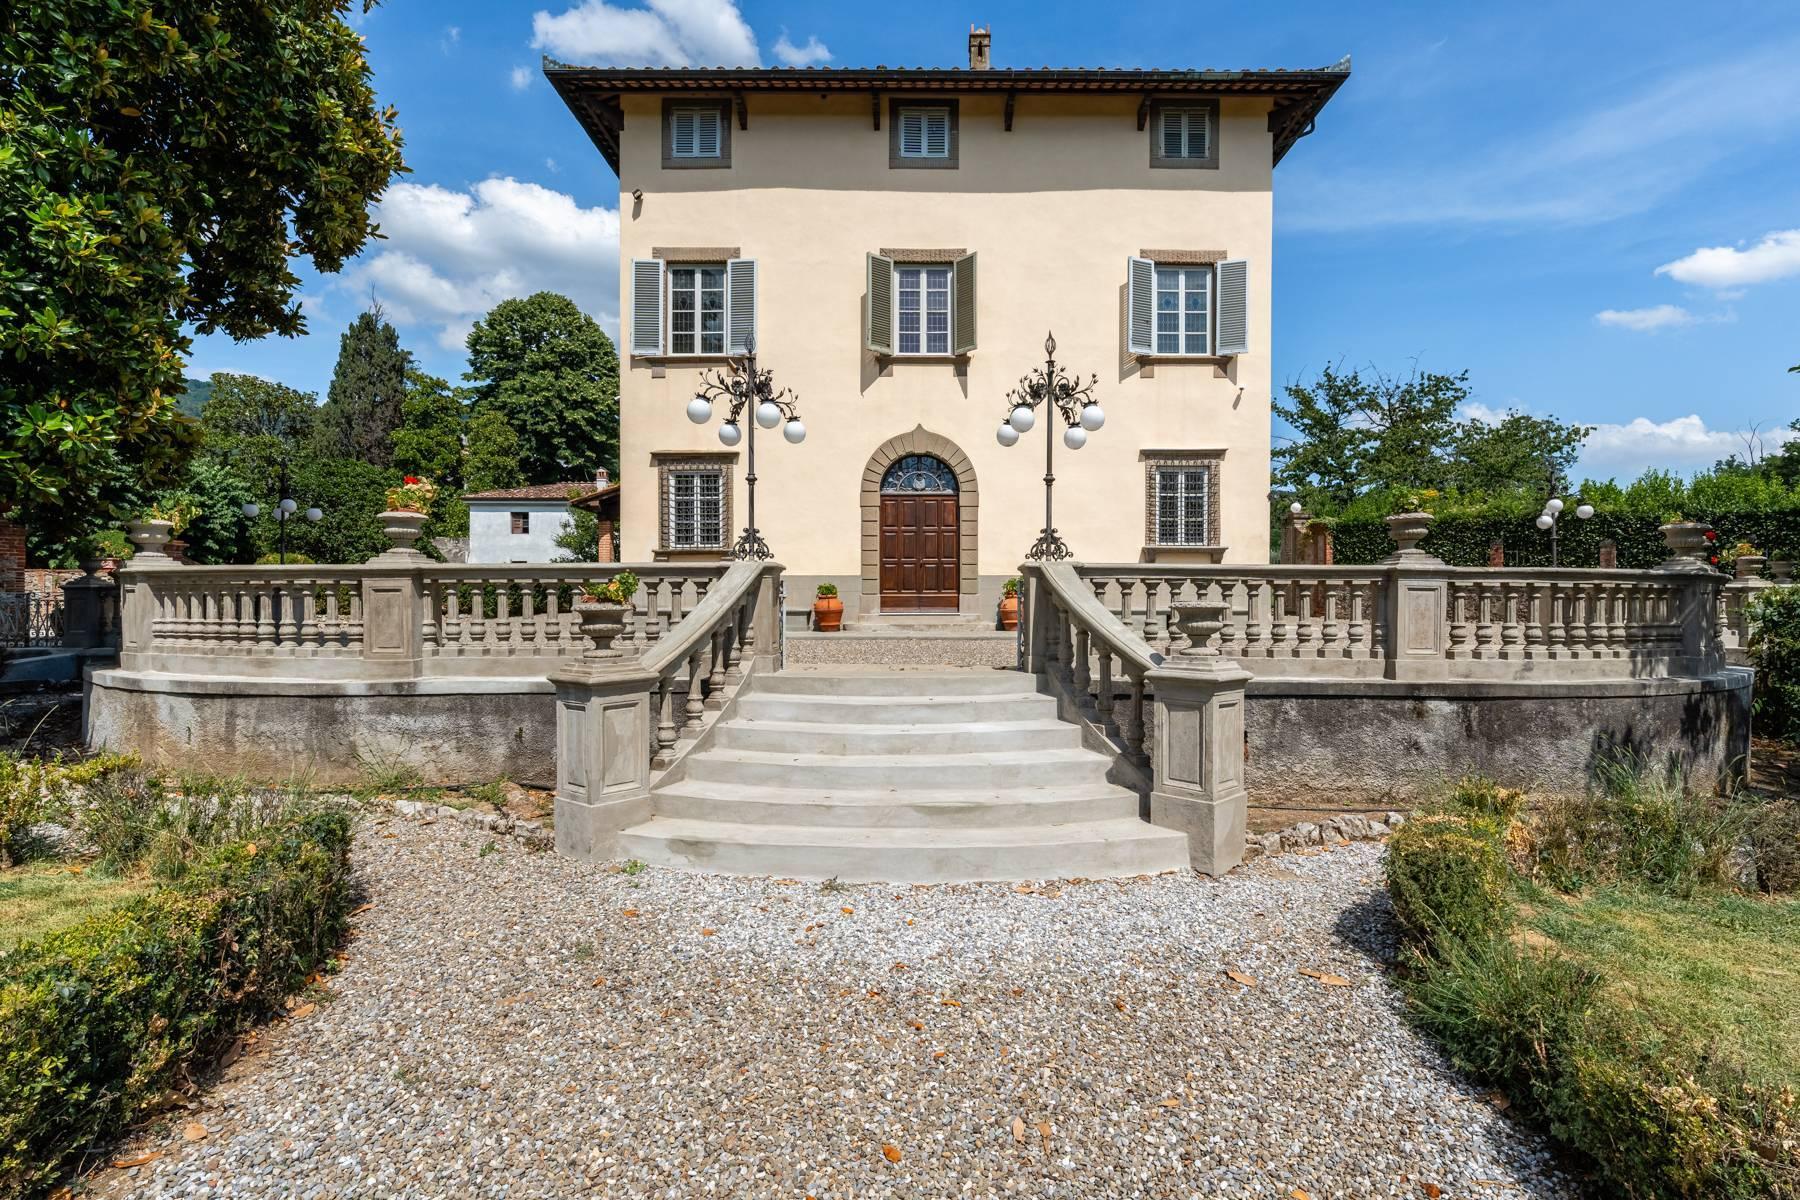 Incantevole villa settecentesca nei pressi di Lucca - 2